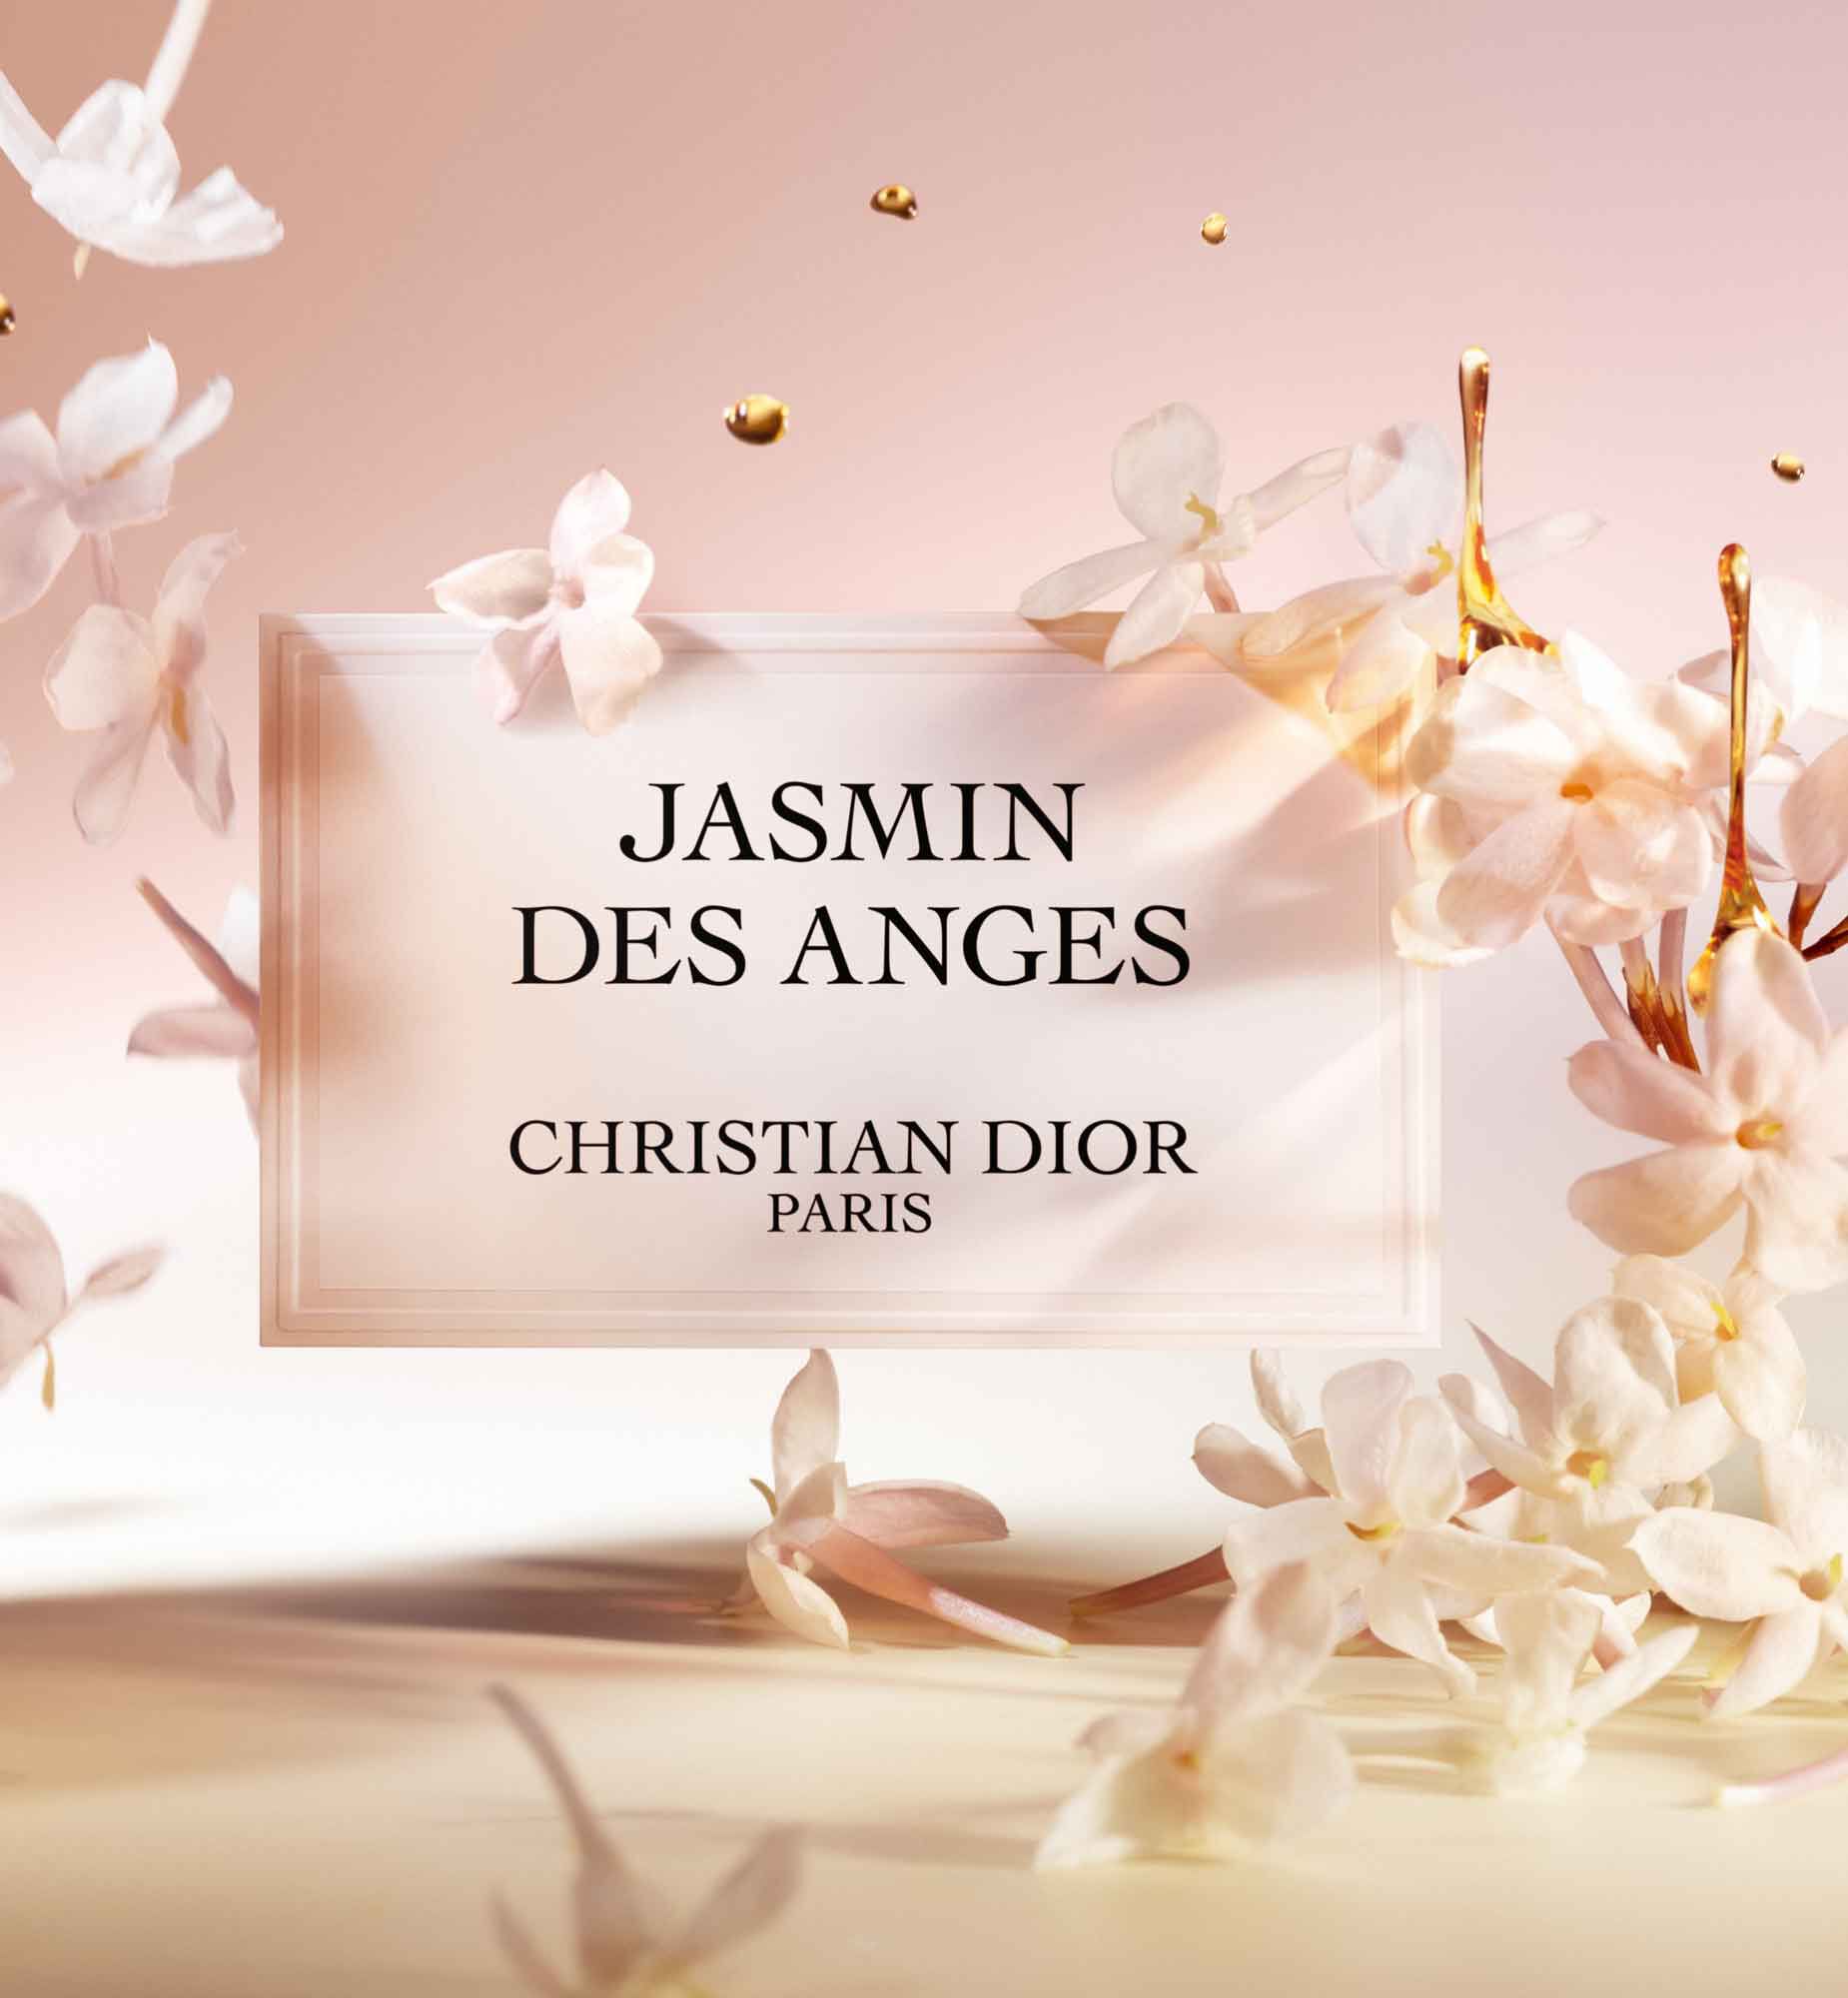 Jasmin des Anges Fragrance: floral-fruity fragrance drenched in